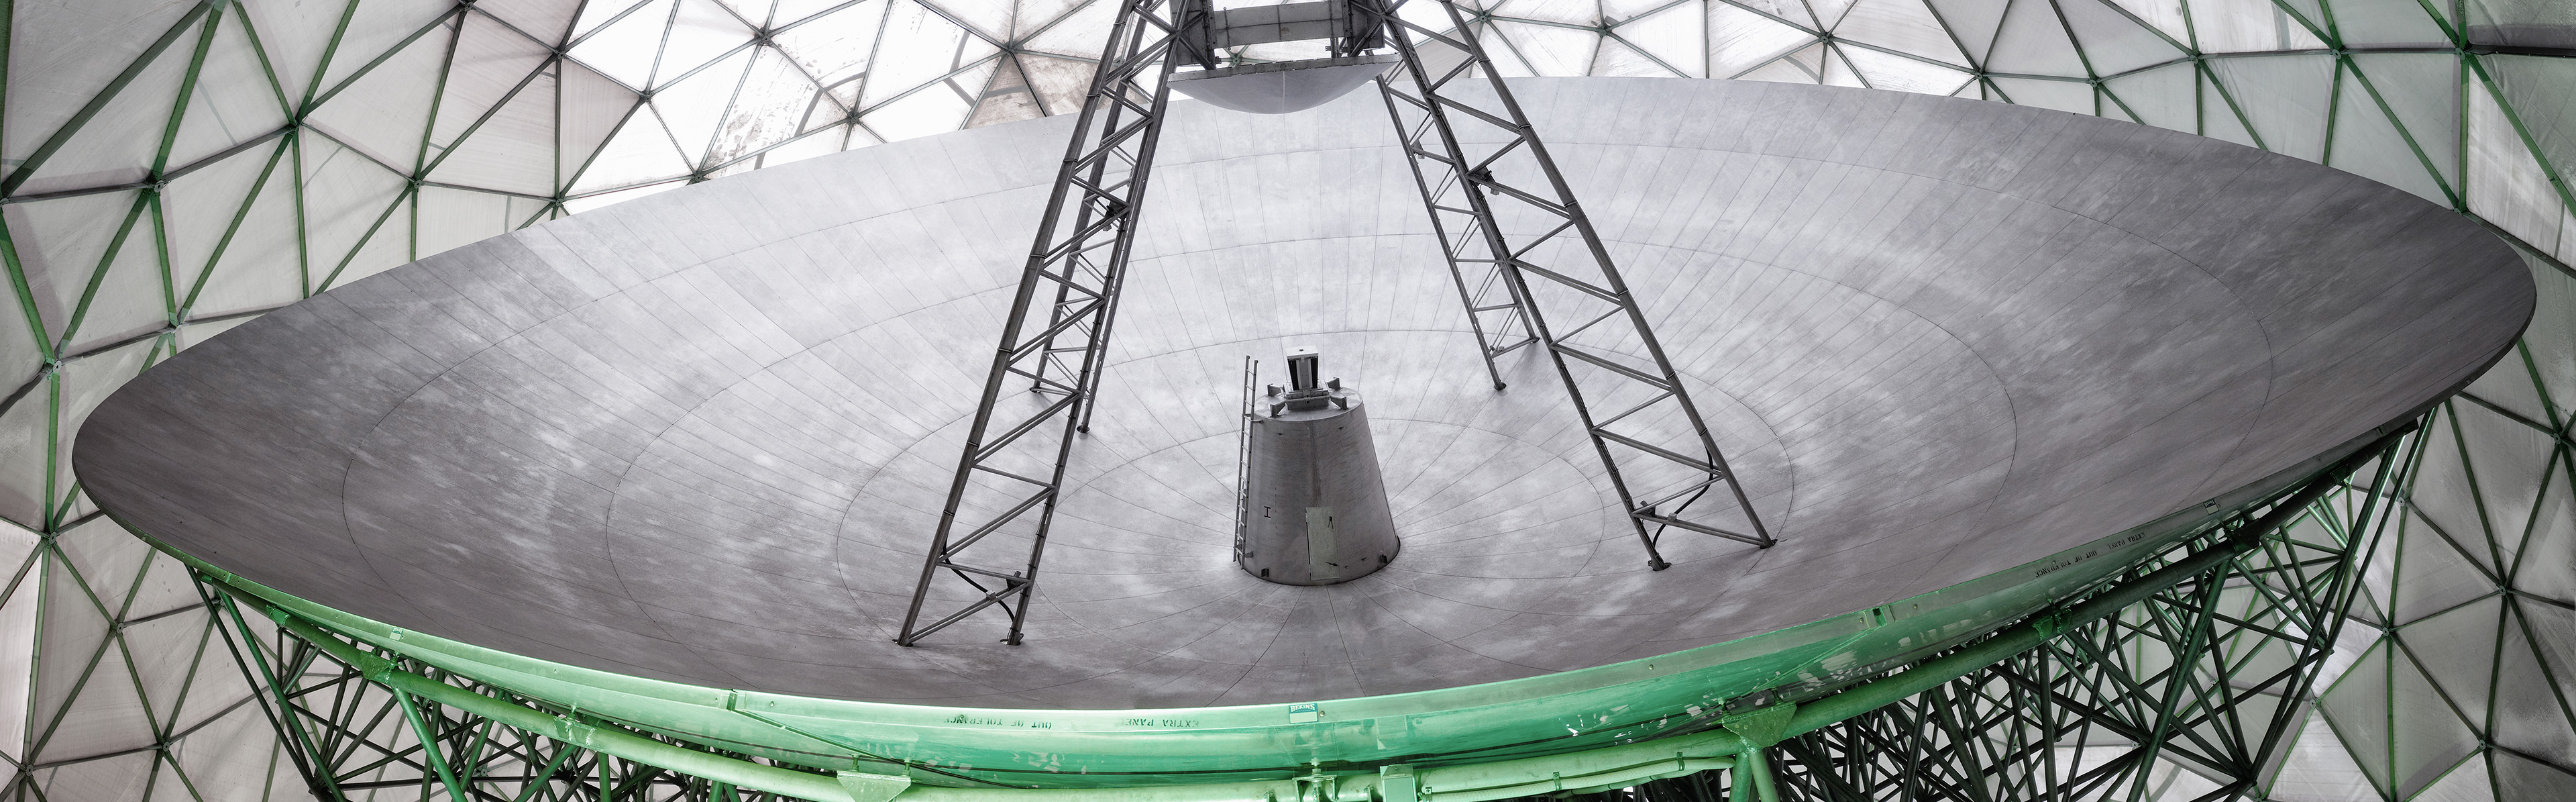 Radare gibt es in allen Größen und verschiedenen Bauformen. TIRA ist eines der größten Weltraumbeobachtungsradare mit Parabol-Spiegel weltweit.